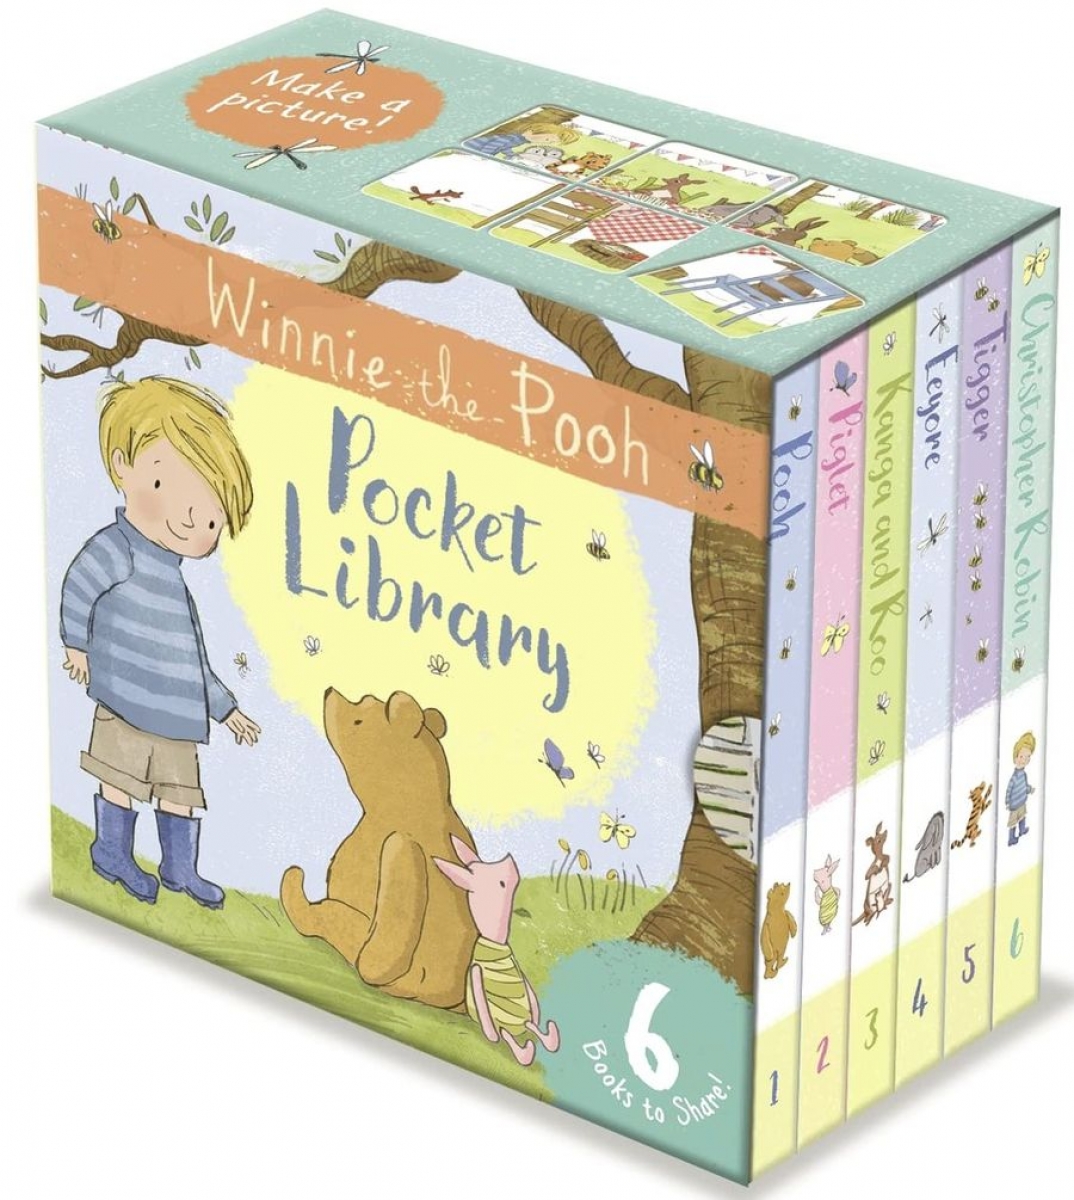 Egmont Publishing Uk Winnie-the-pooh pocket library 